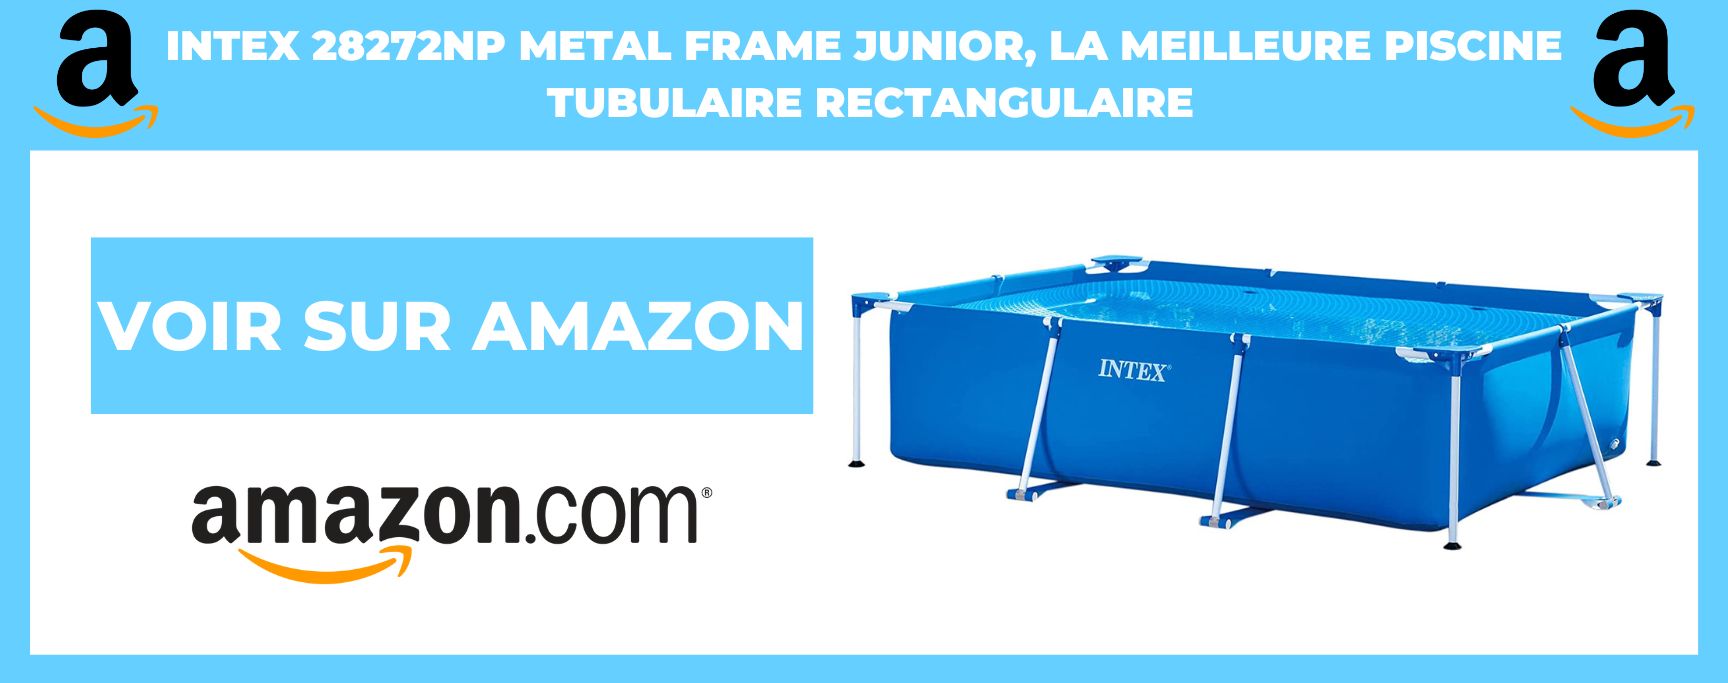 INTEX 28272NP metal frame junior